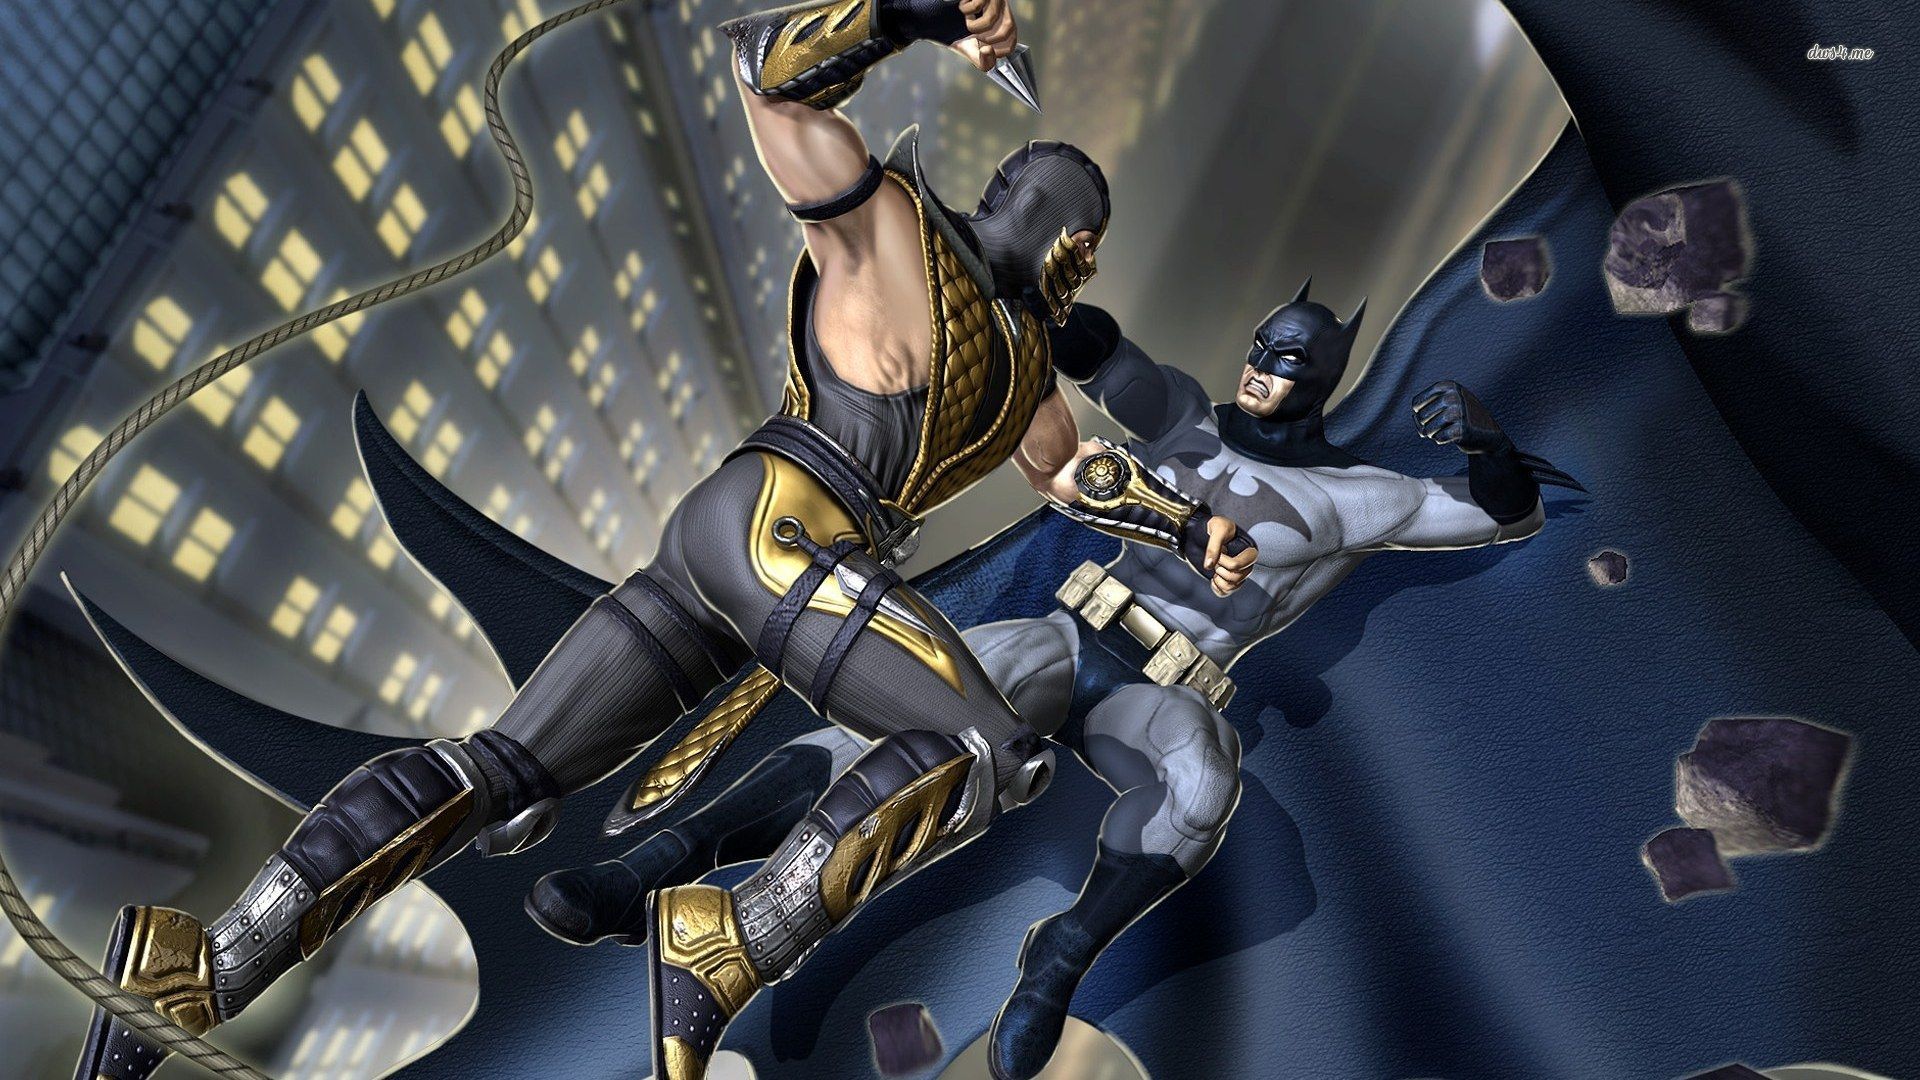 Batman vs. Scorpion wallpaper - Game wallpapers - #2230